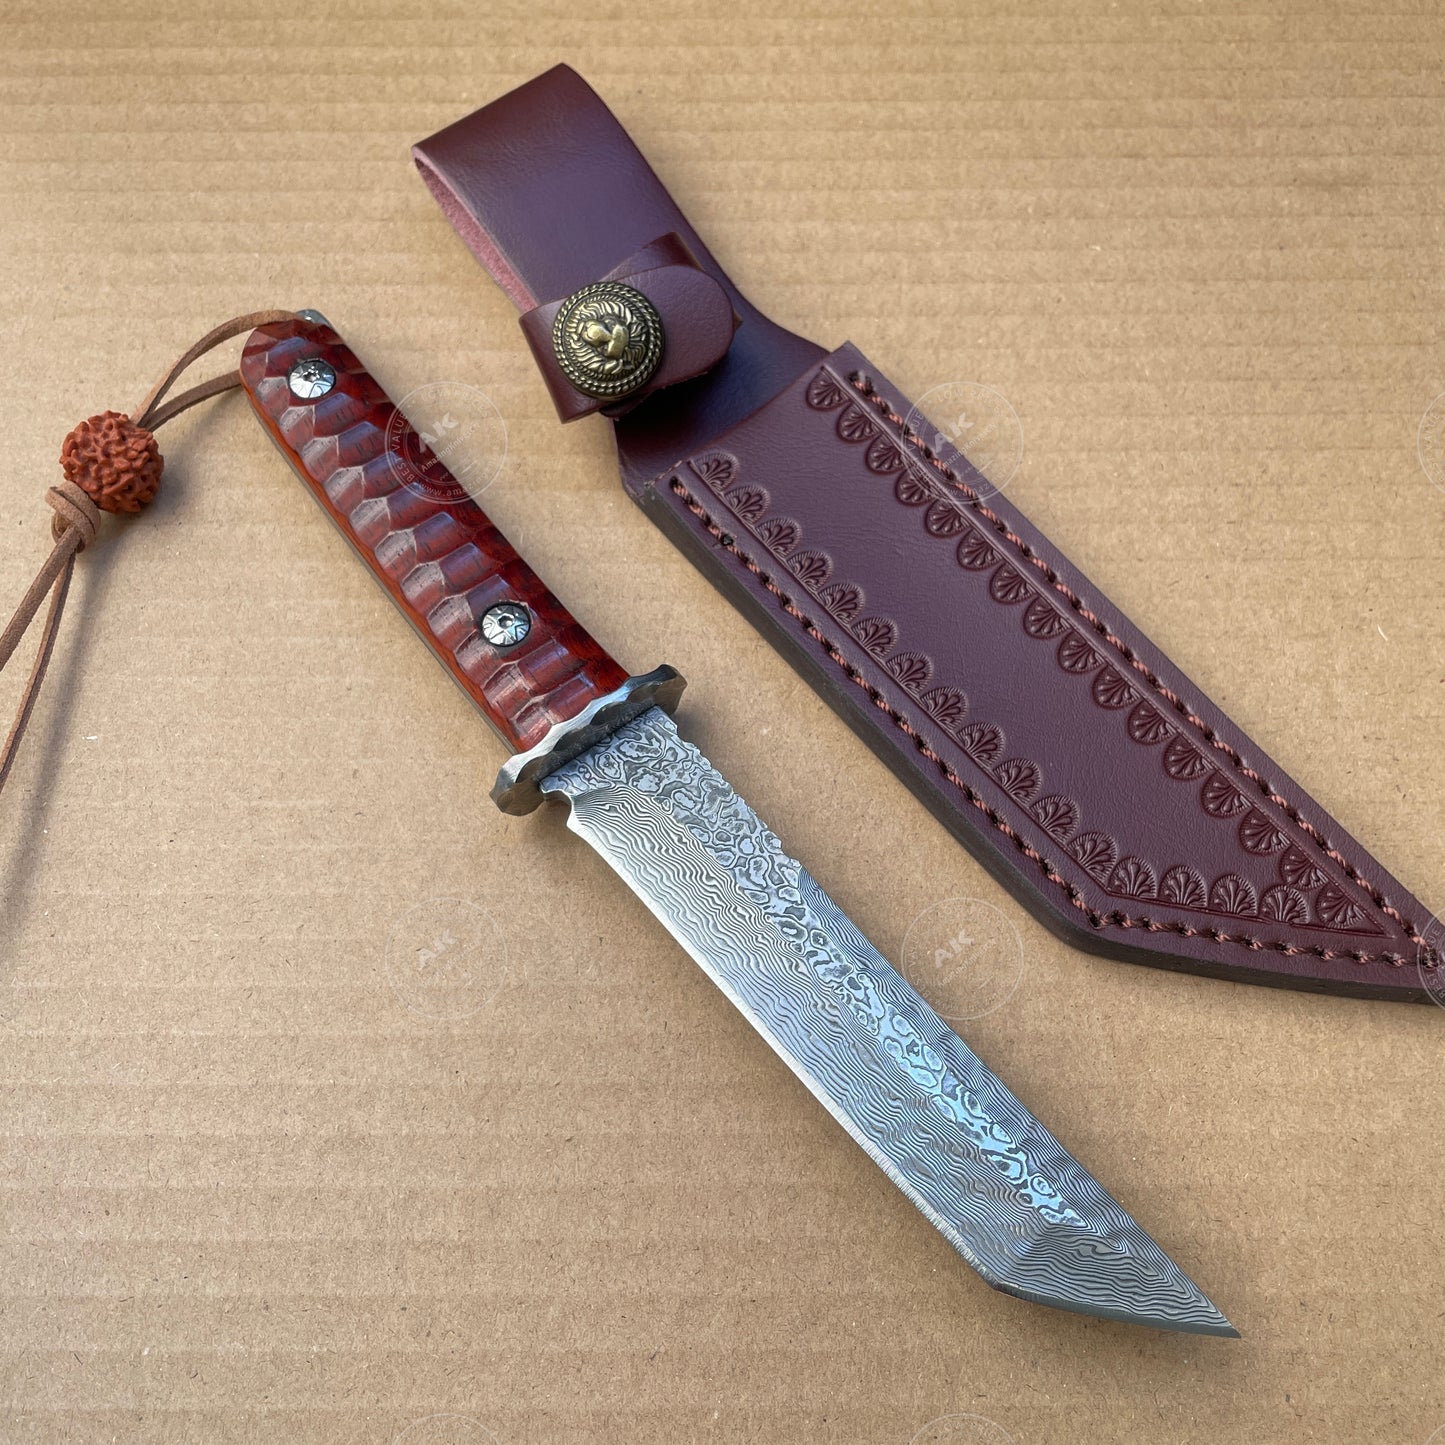 Japanese VG10 Damascus Hunting Knife Katana Knife Samurai Full Tang Sword Tanto - AK-HT0570